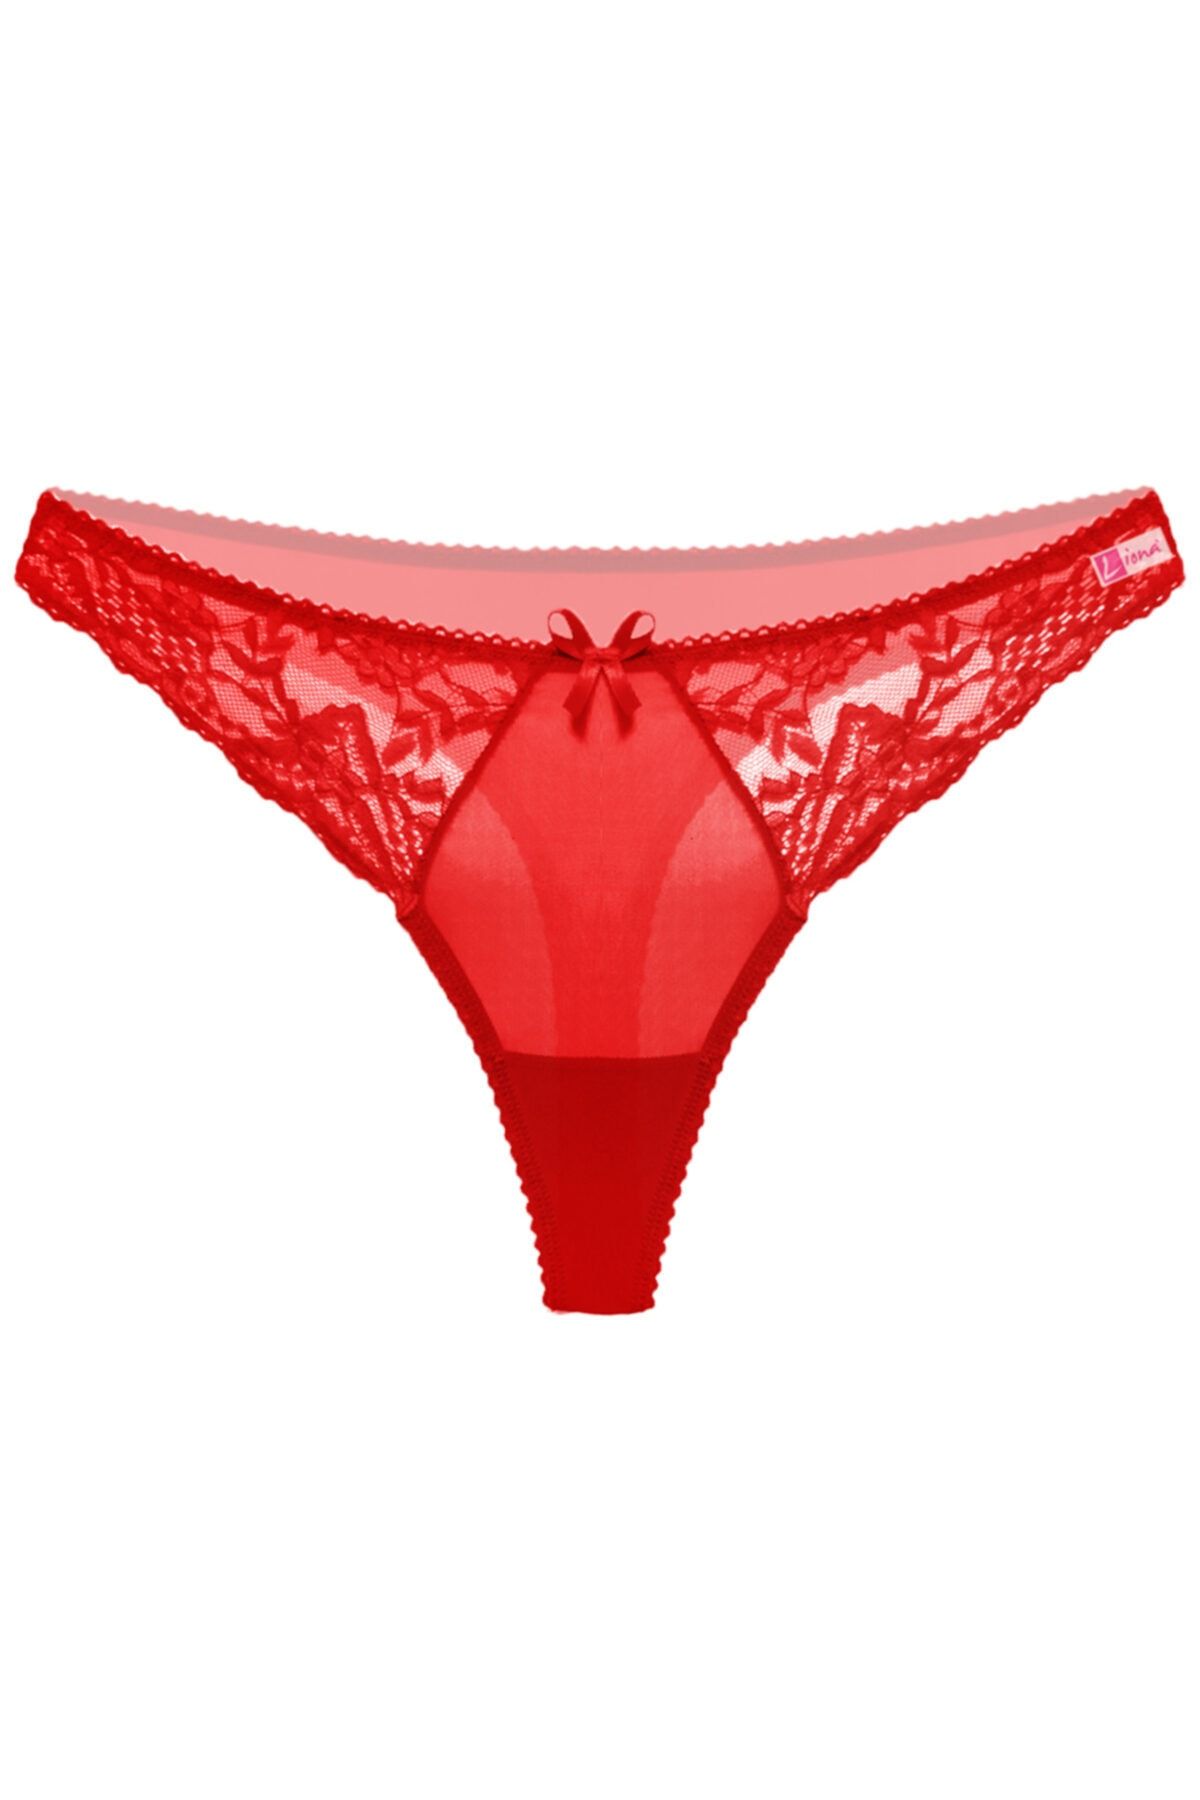 Liona Kırmızı Renk Dantelli Kadın G String